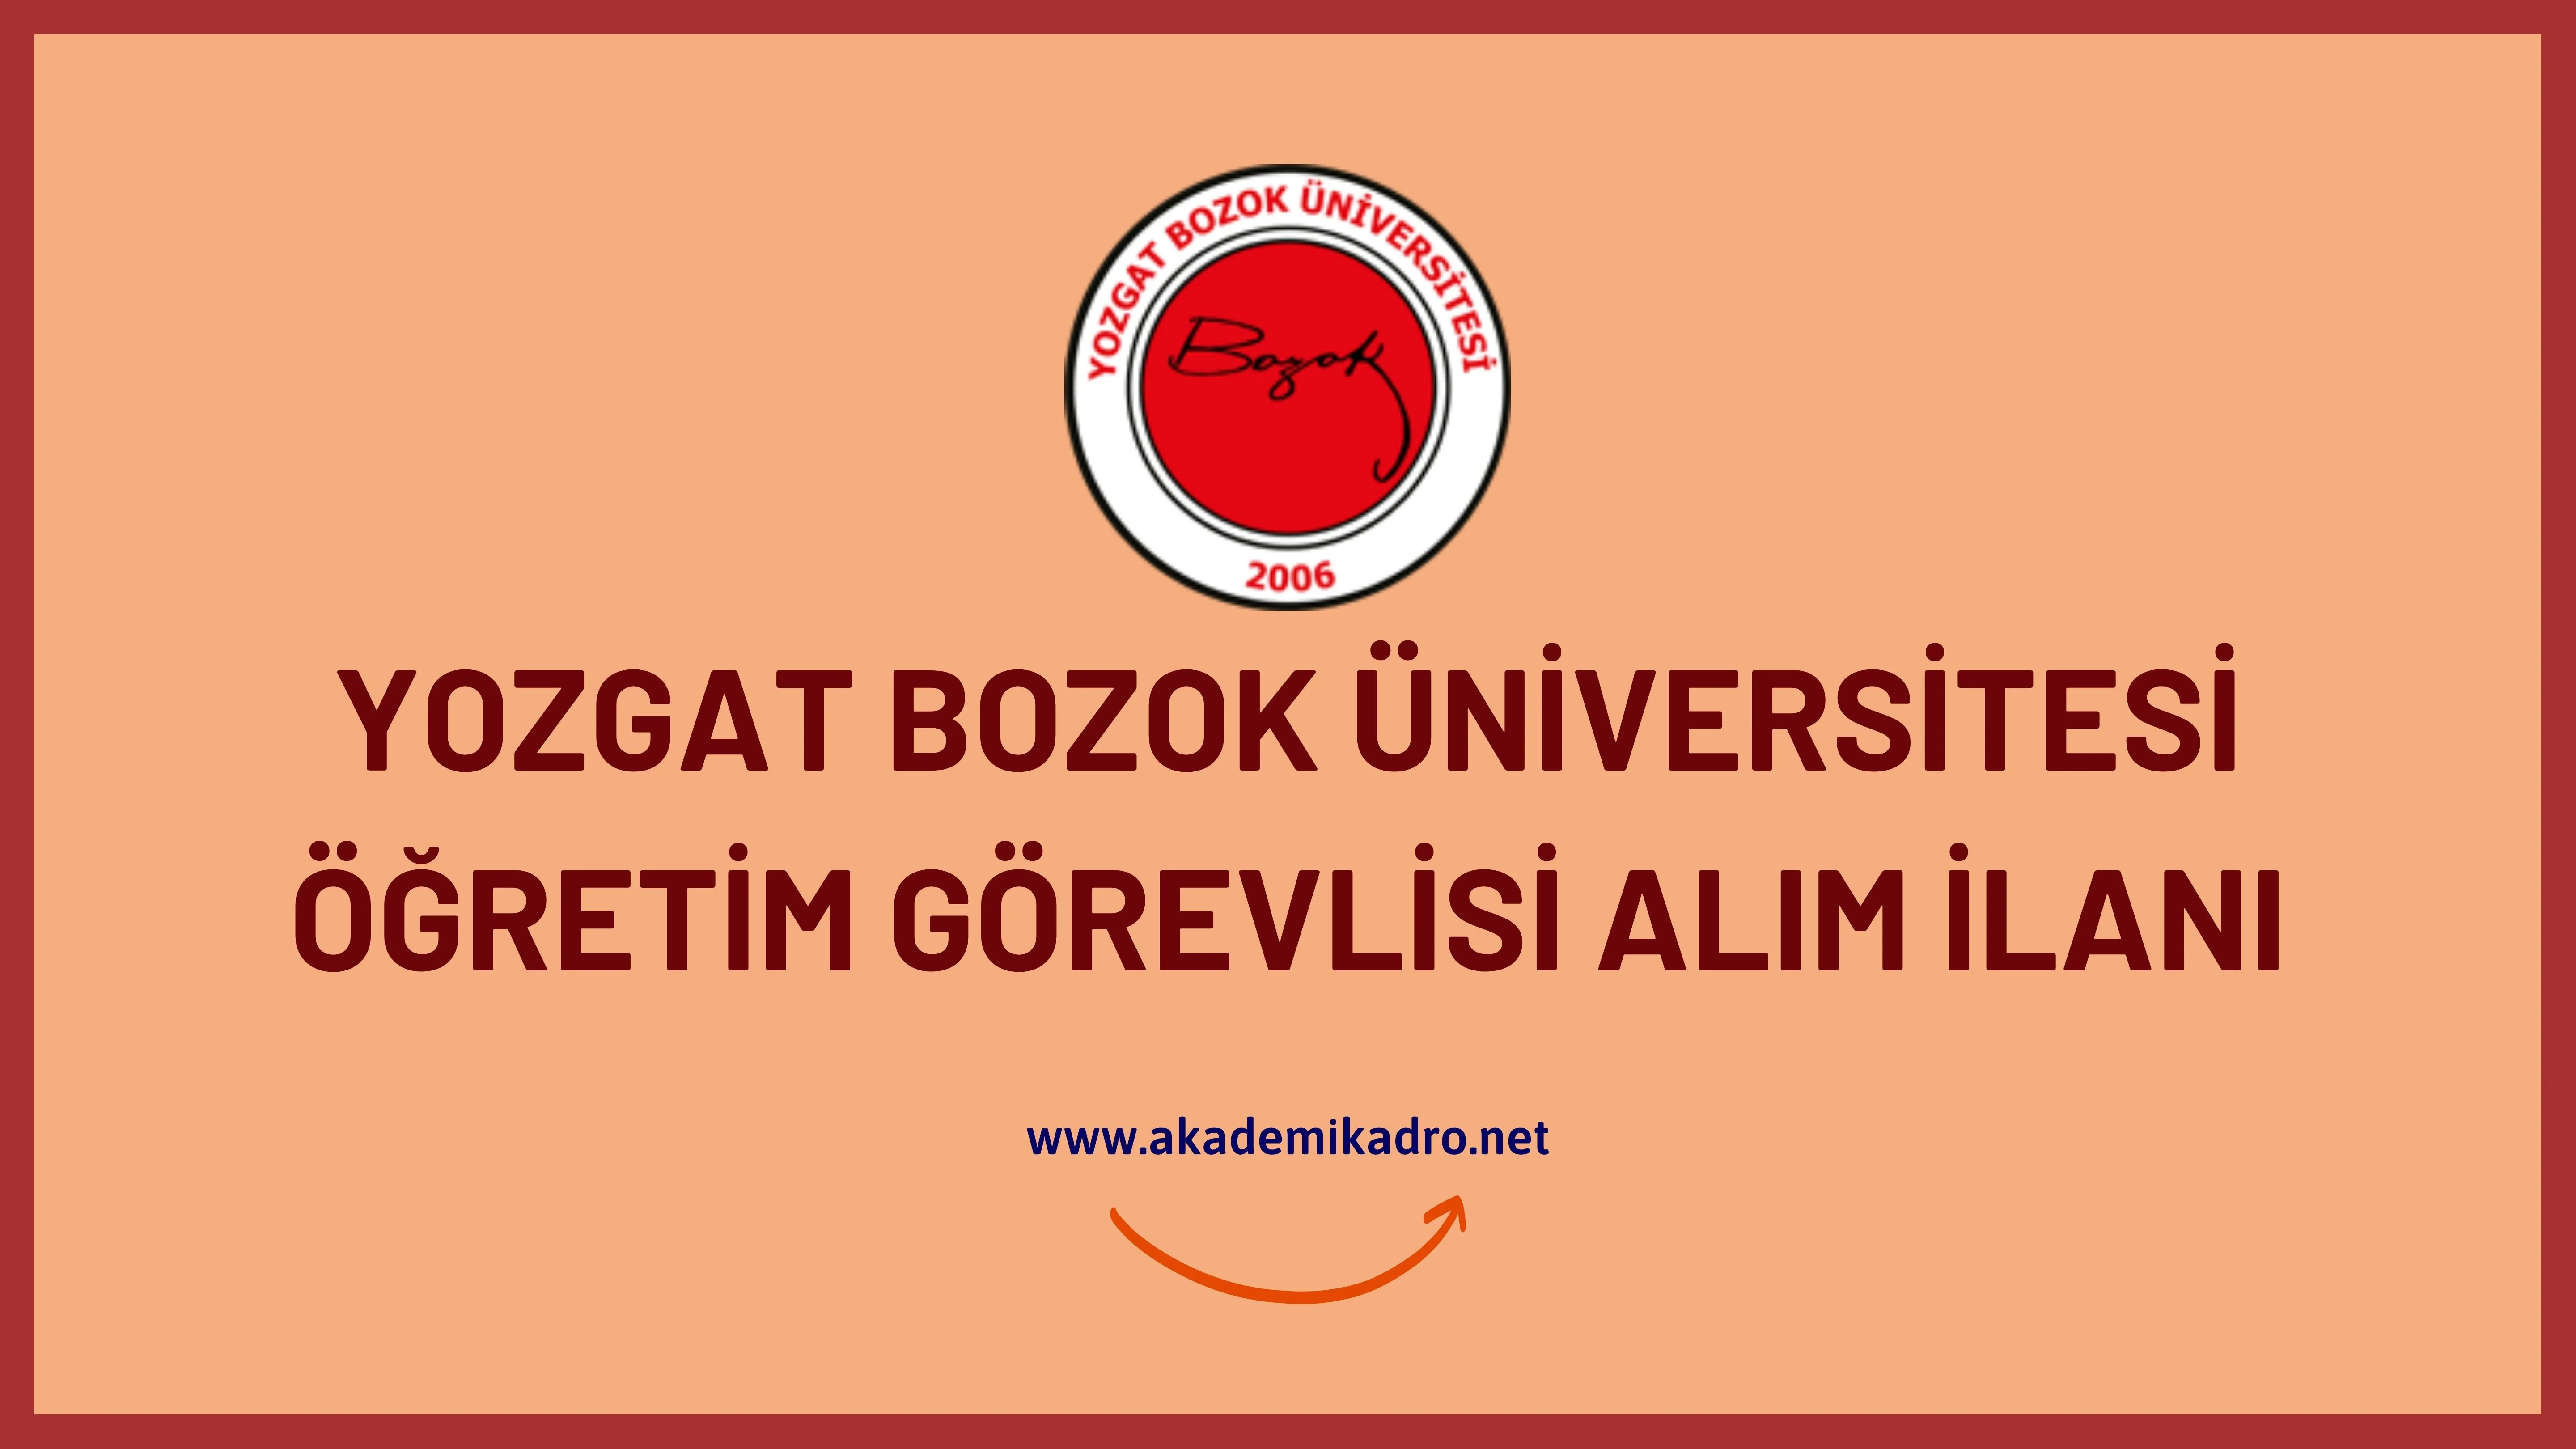 Yozgat Bozok Üniversitesi 7 Öğretim Görevlisi, 7 Araştırma görevlisi ve çok sayıda öğretim üyesi alacaktır.